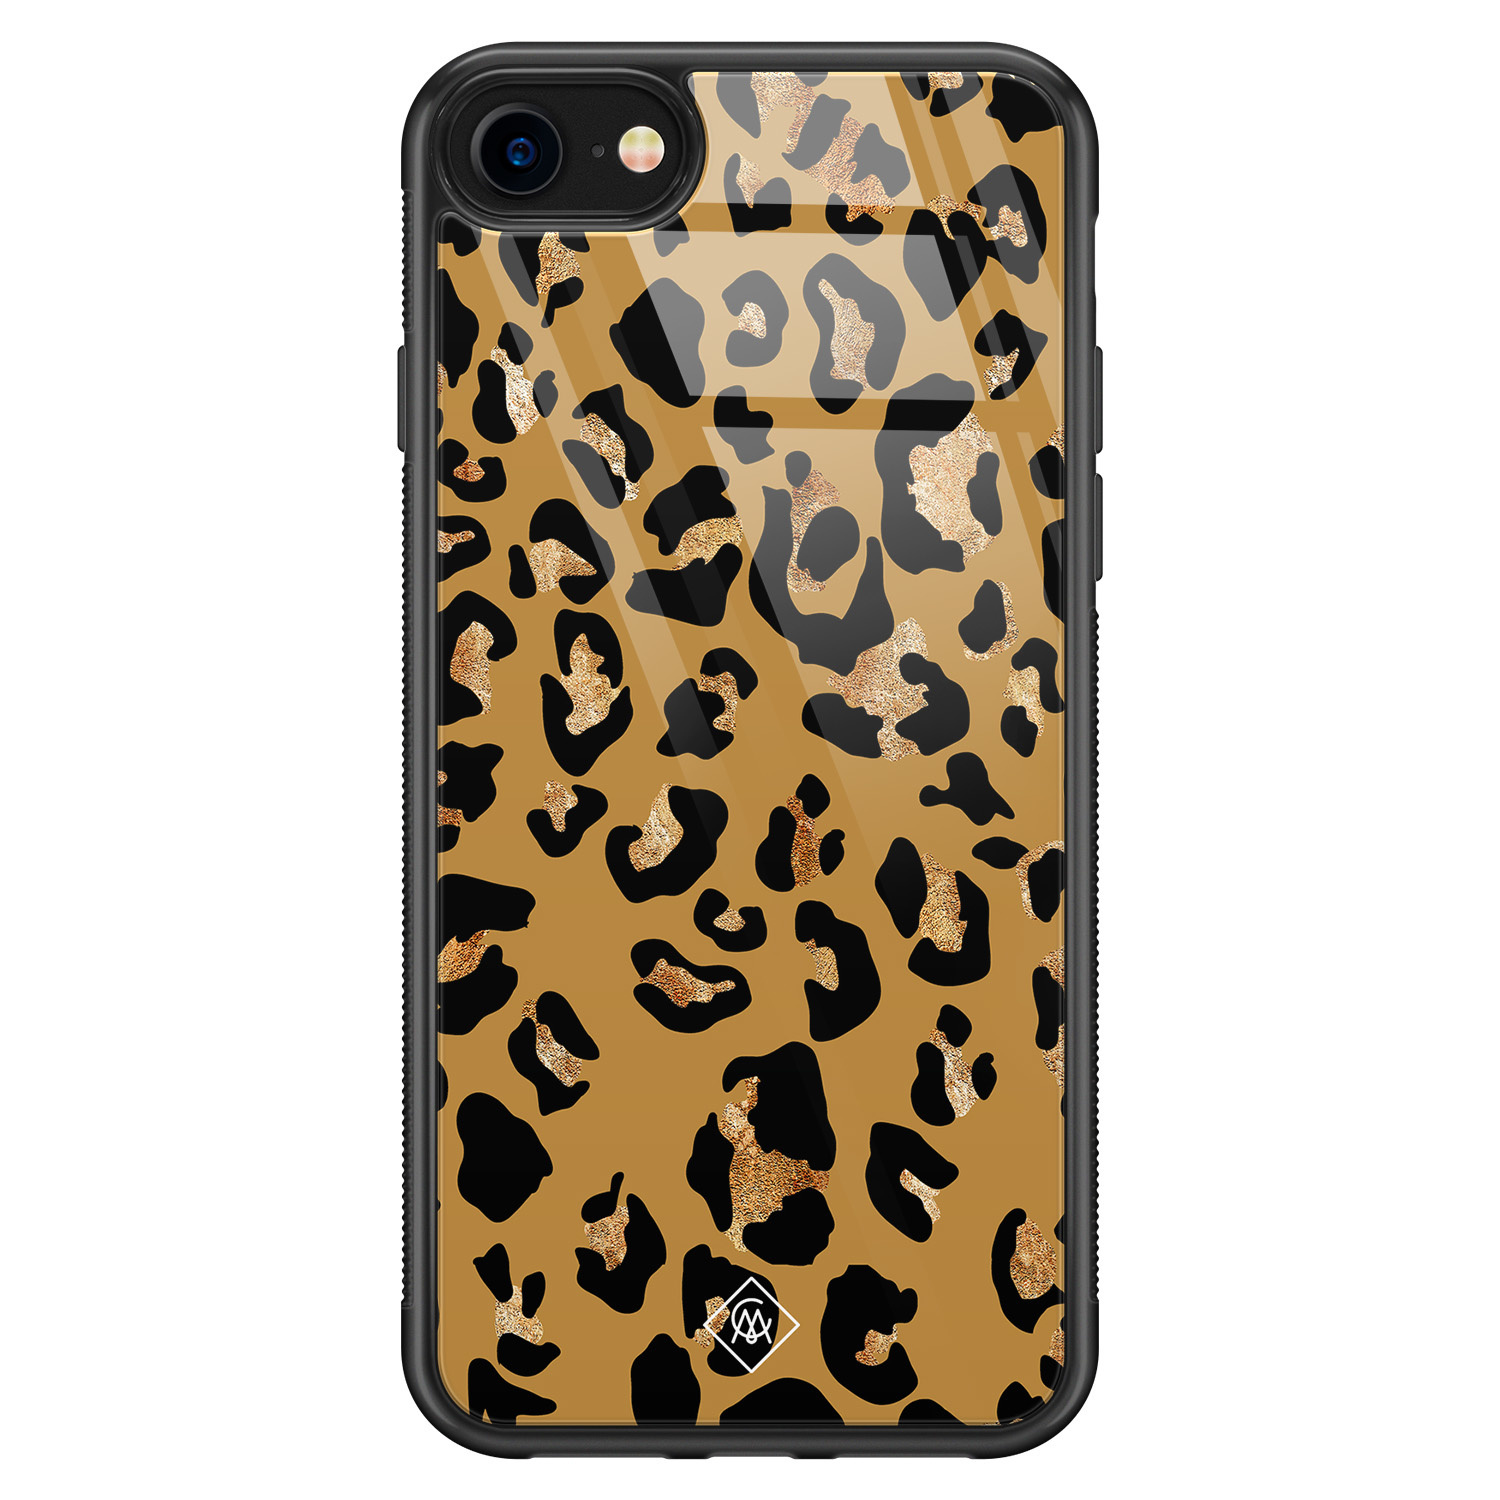 iPhone SE 2020 glazen hardcase - Jungle wildcat